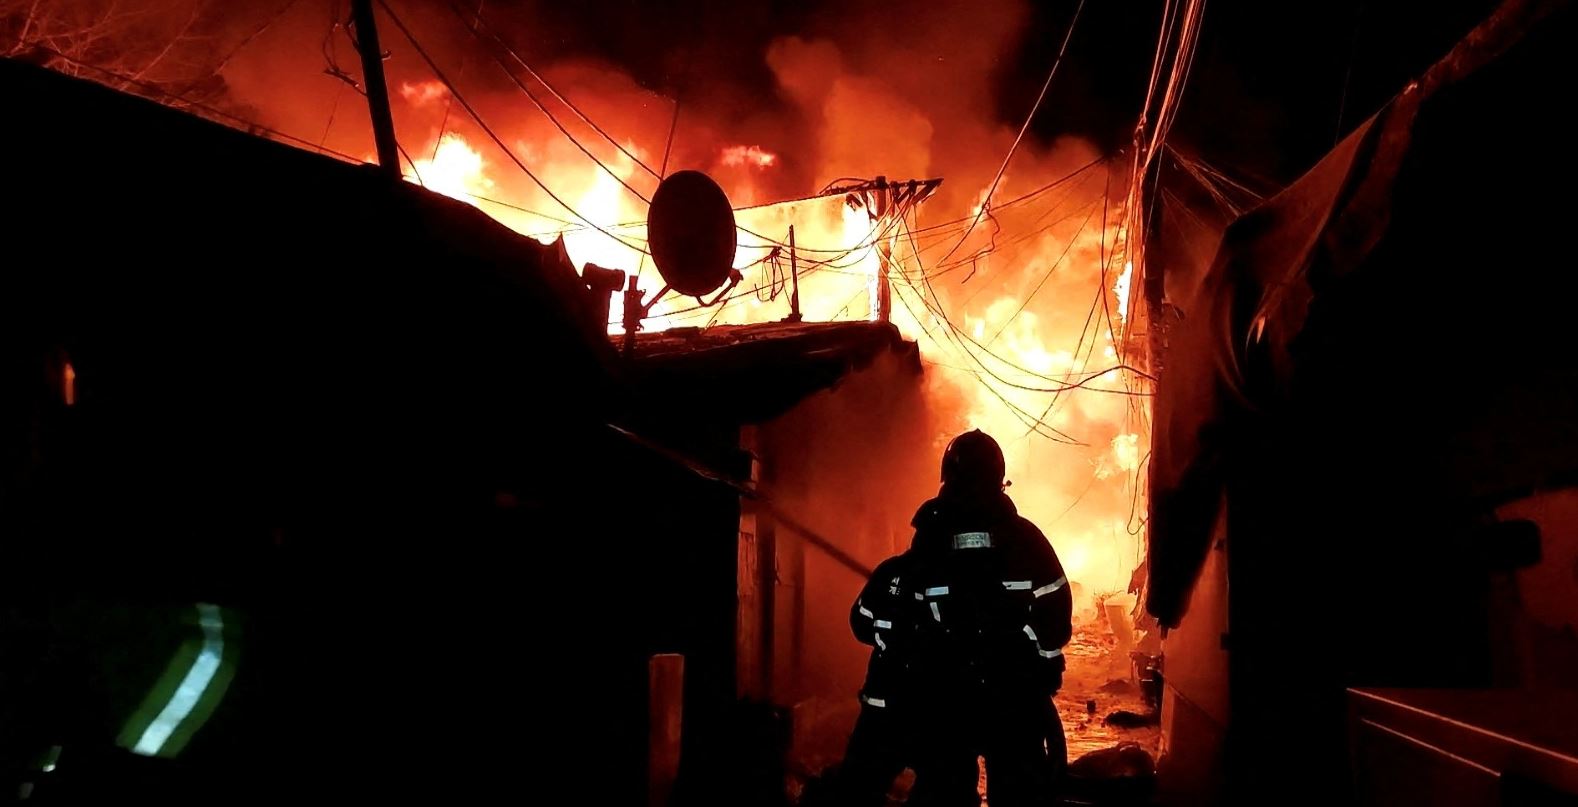 Coreea de Sud: 500 de persoane evacuate si 60 de locuinte distruse dupa izbucnirea unui incendiu la Seul